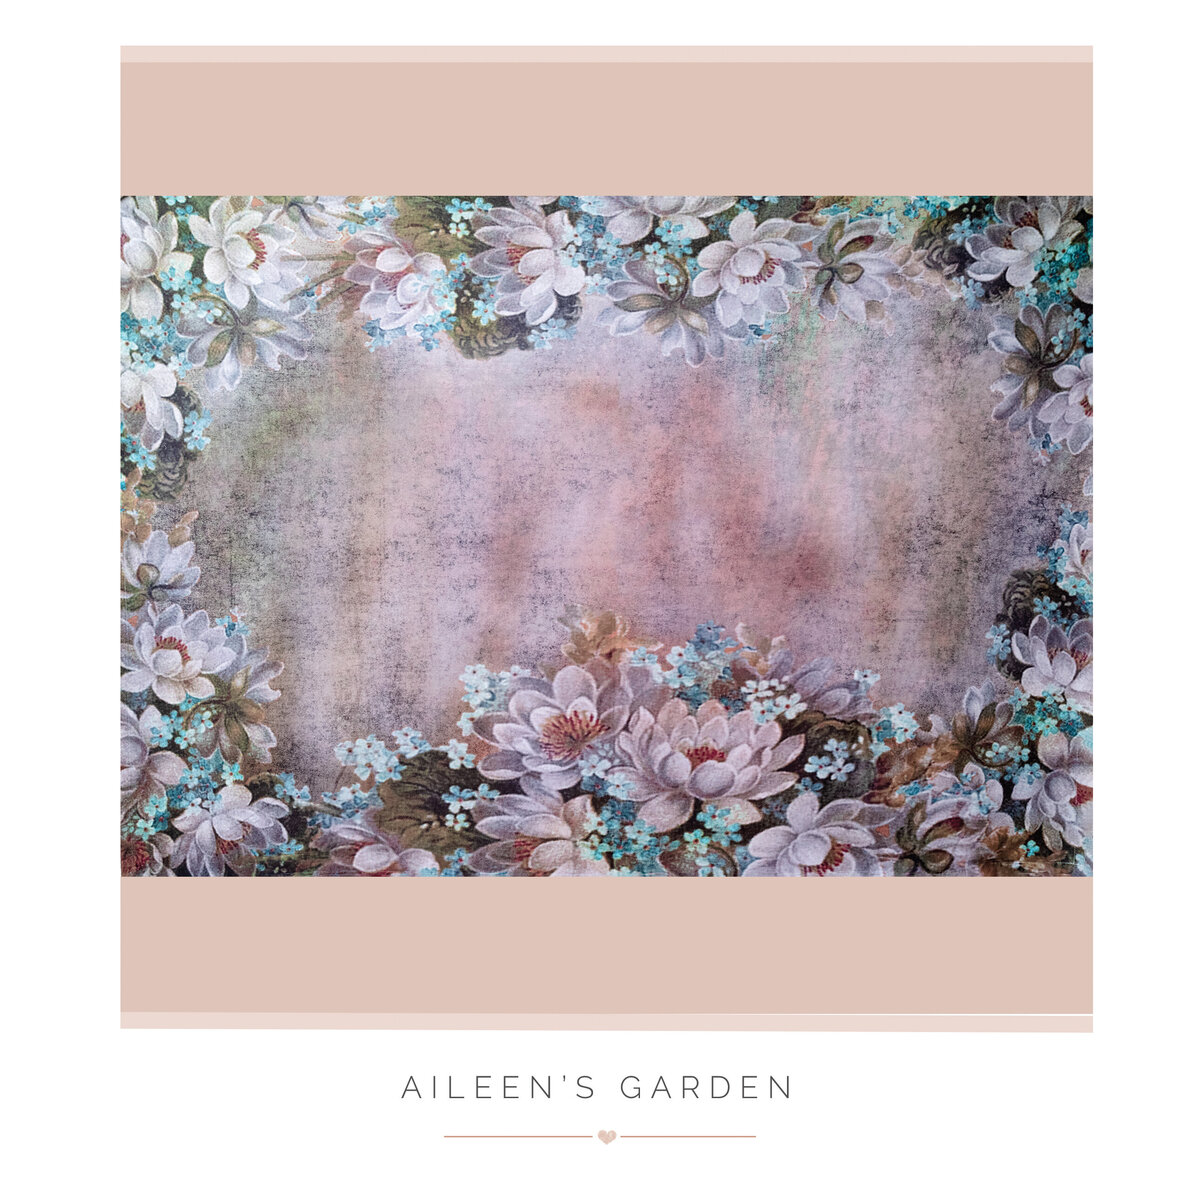 Aileen’s Garden